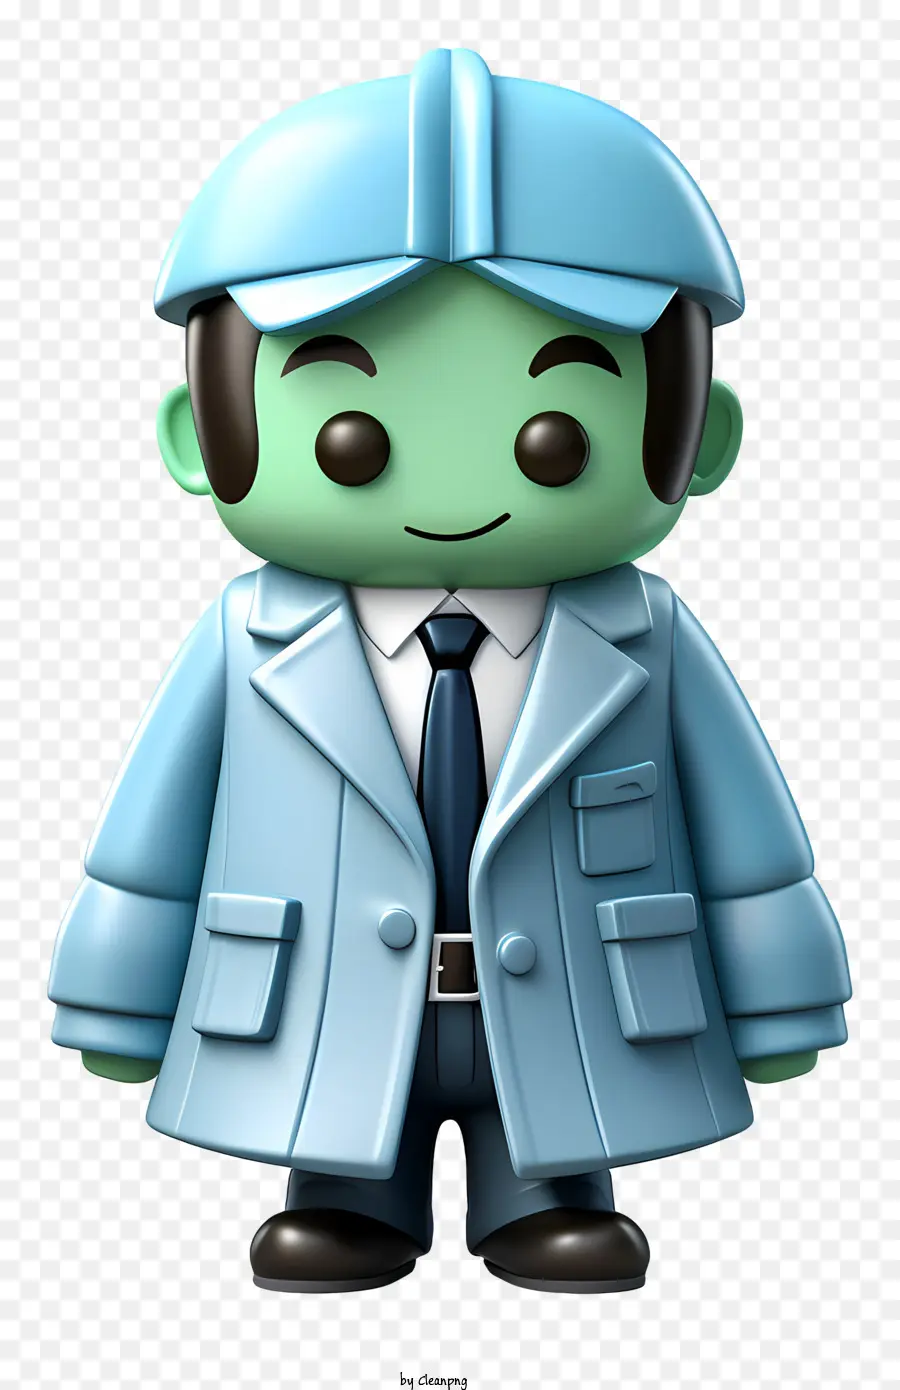 ống nghe - Đặc tính màu xanh lá cây, hình người với ống nghe và bộ đồ